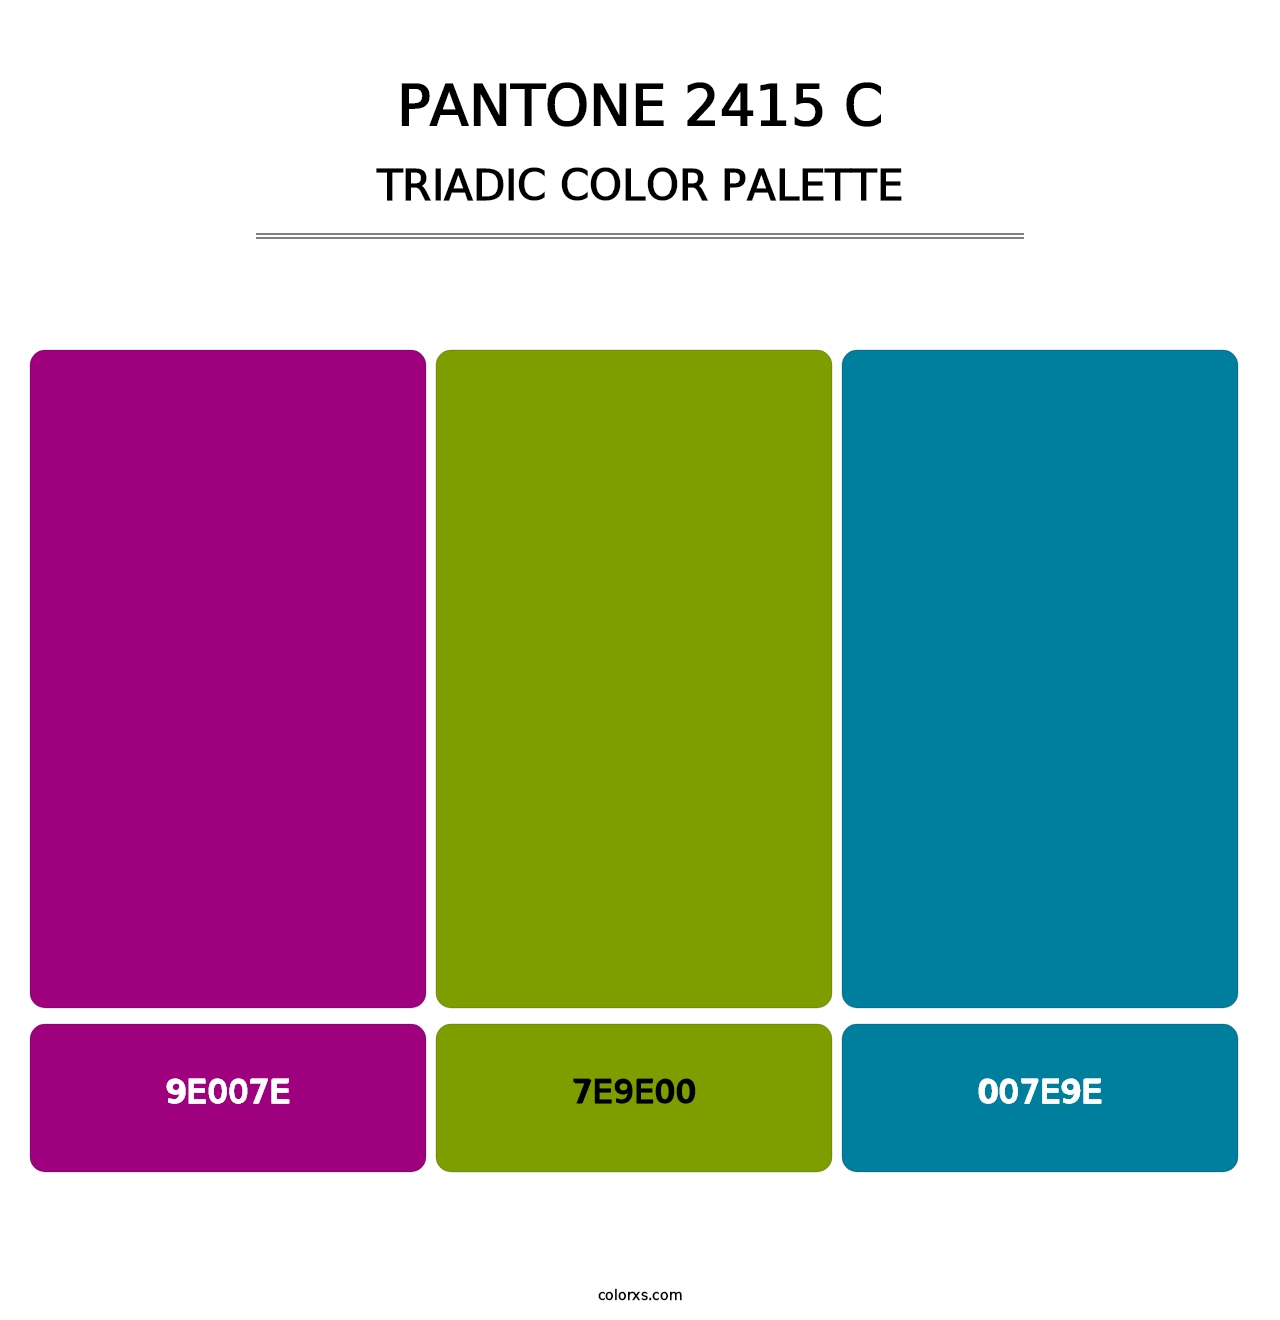 PANTONE 2415 C - Triadic Color Palette